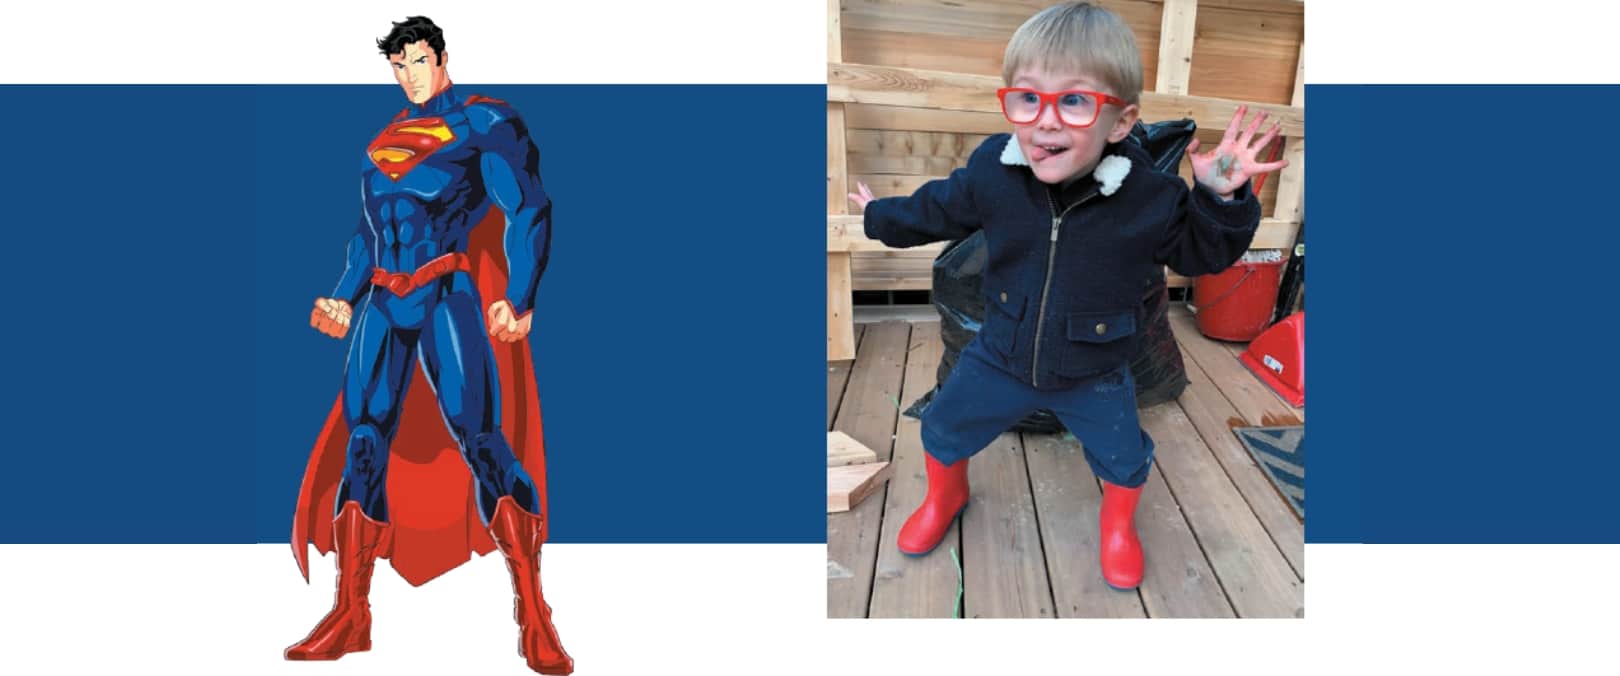 SBspecs Superman frame ajustments for kids